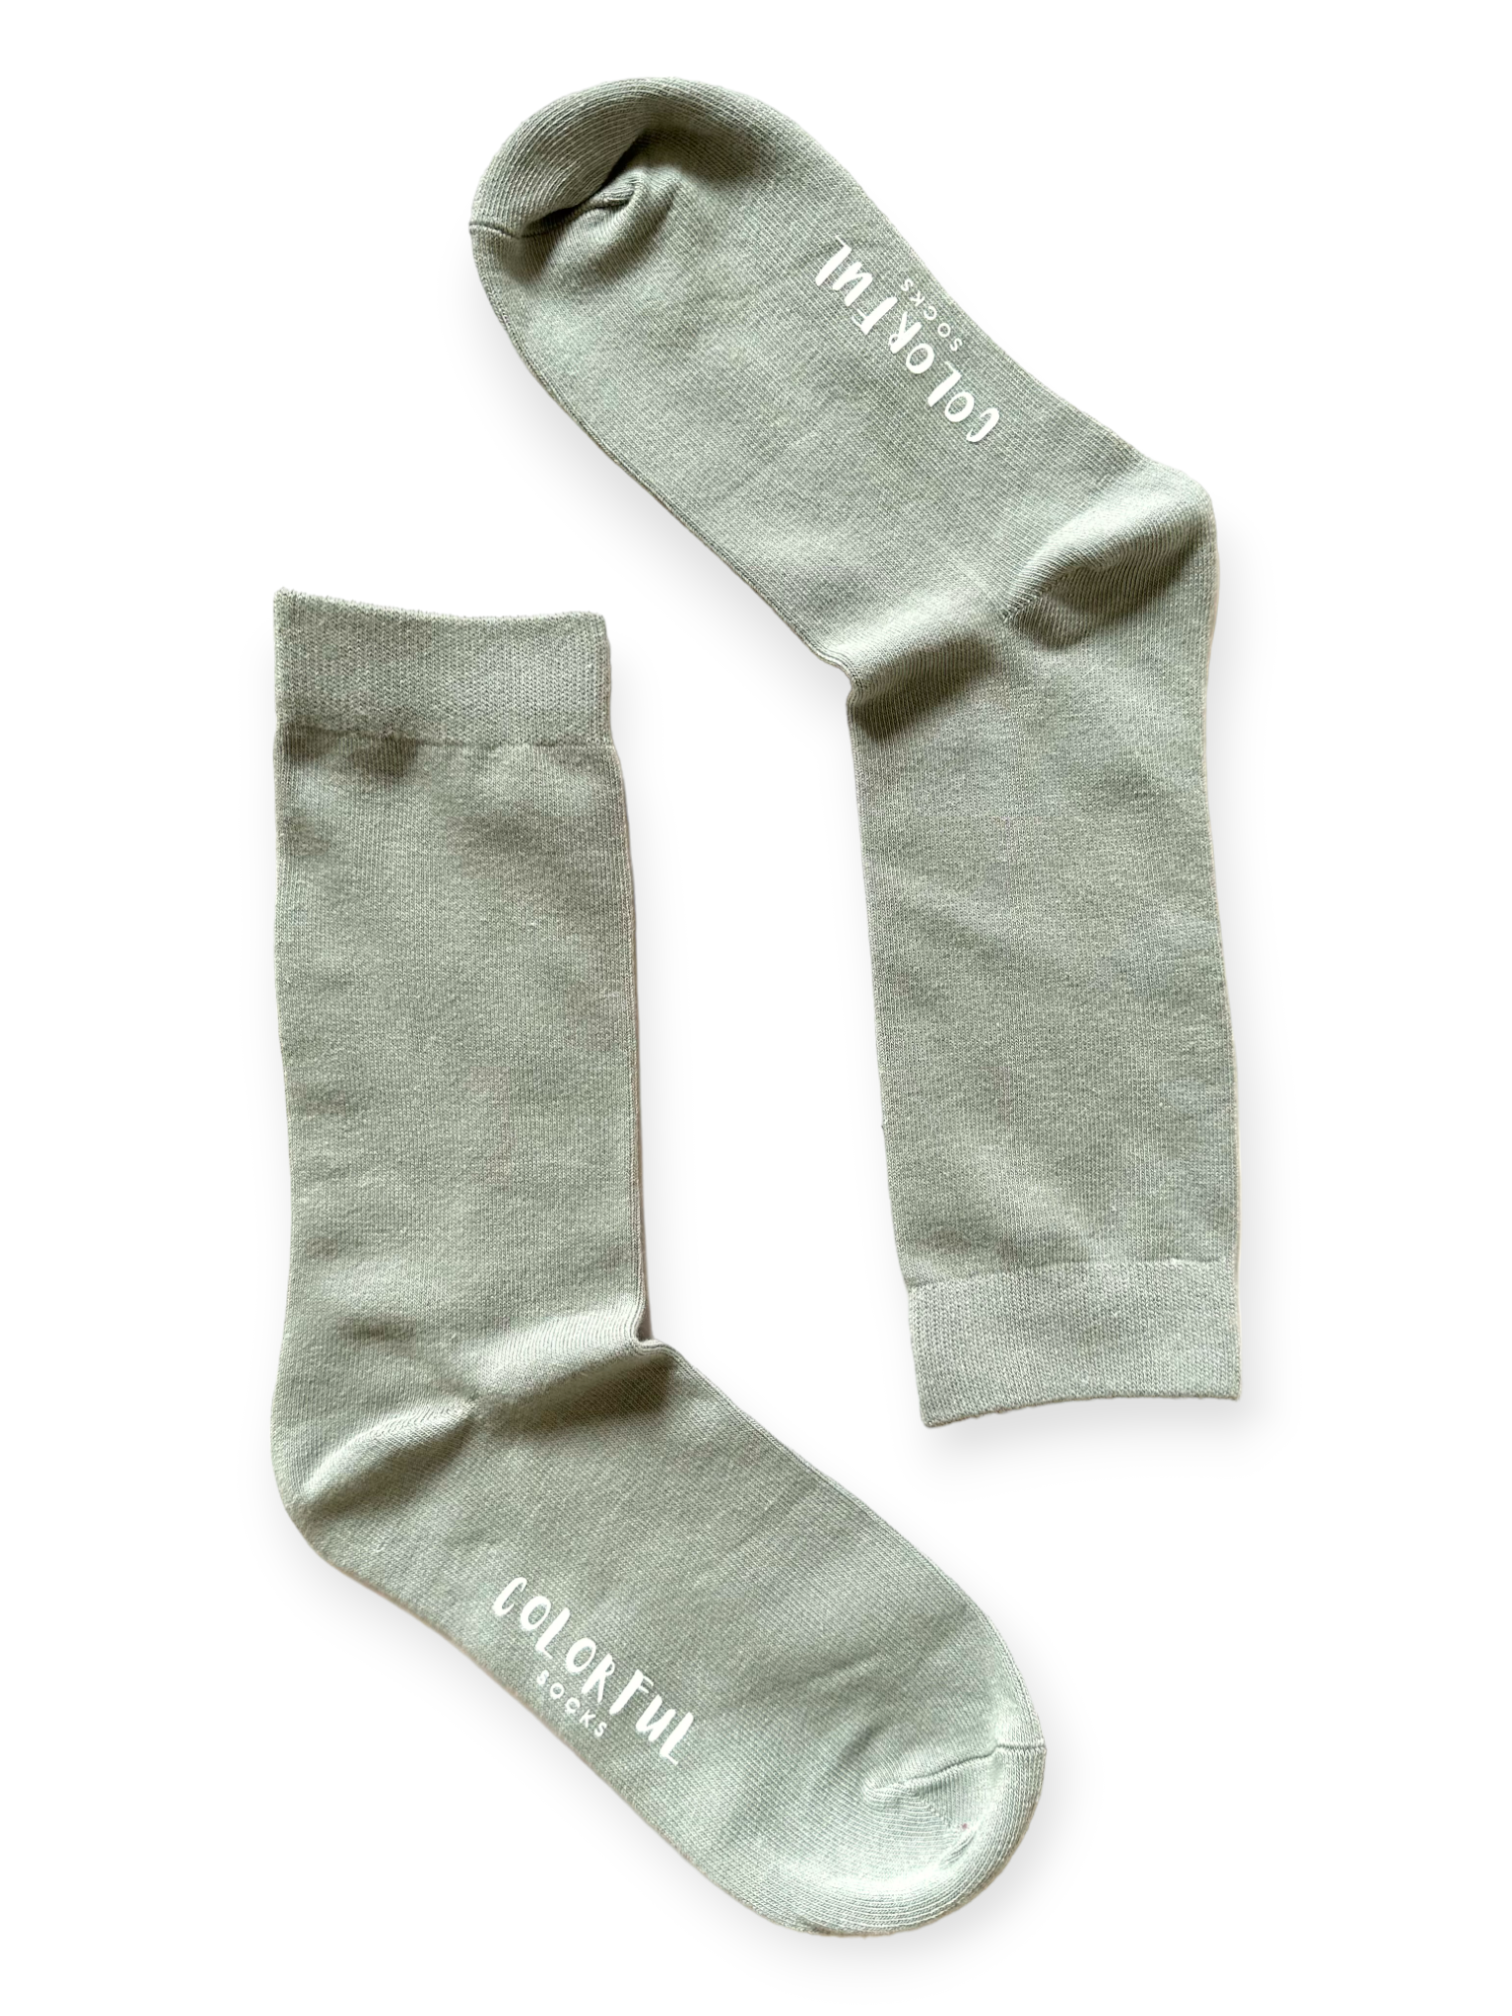 Gray Socks